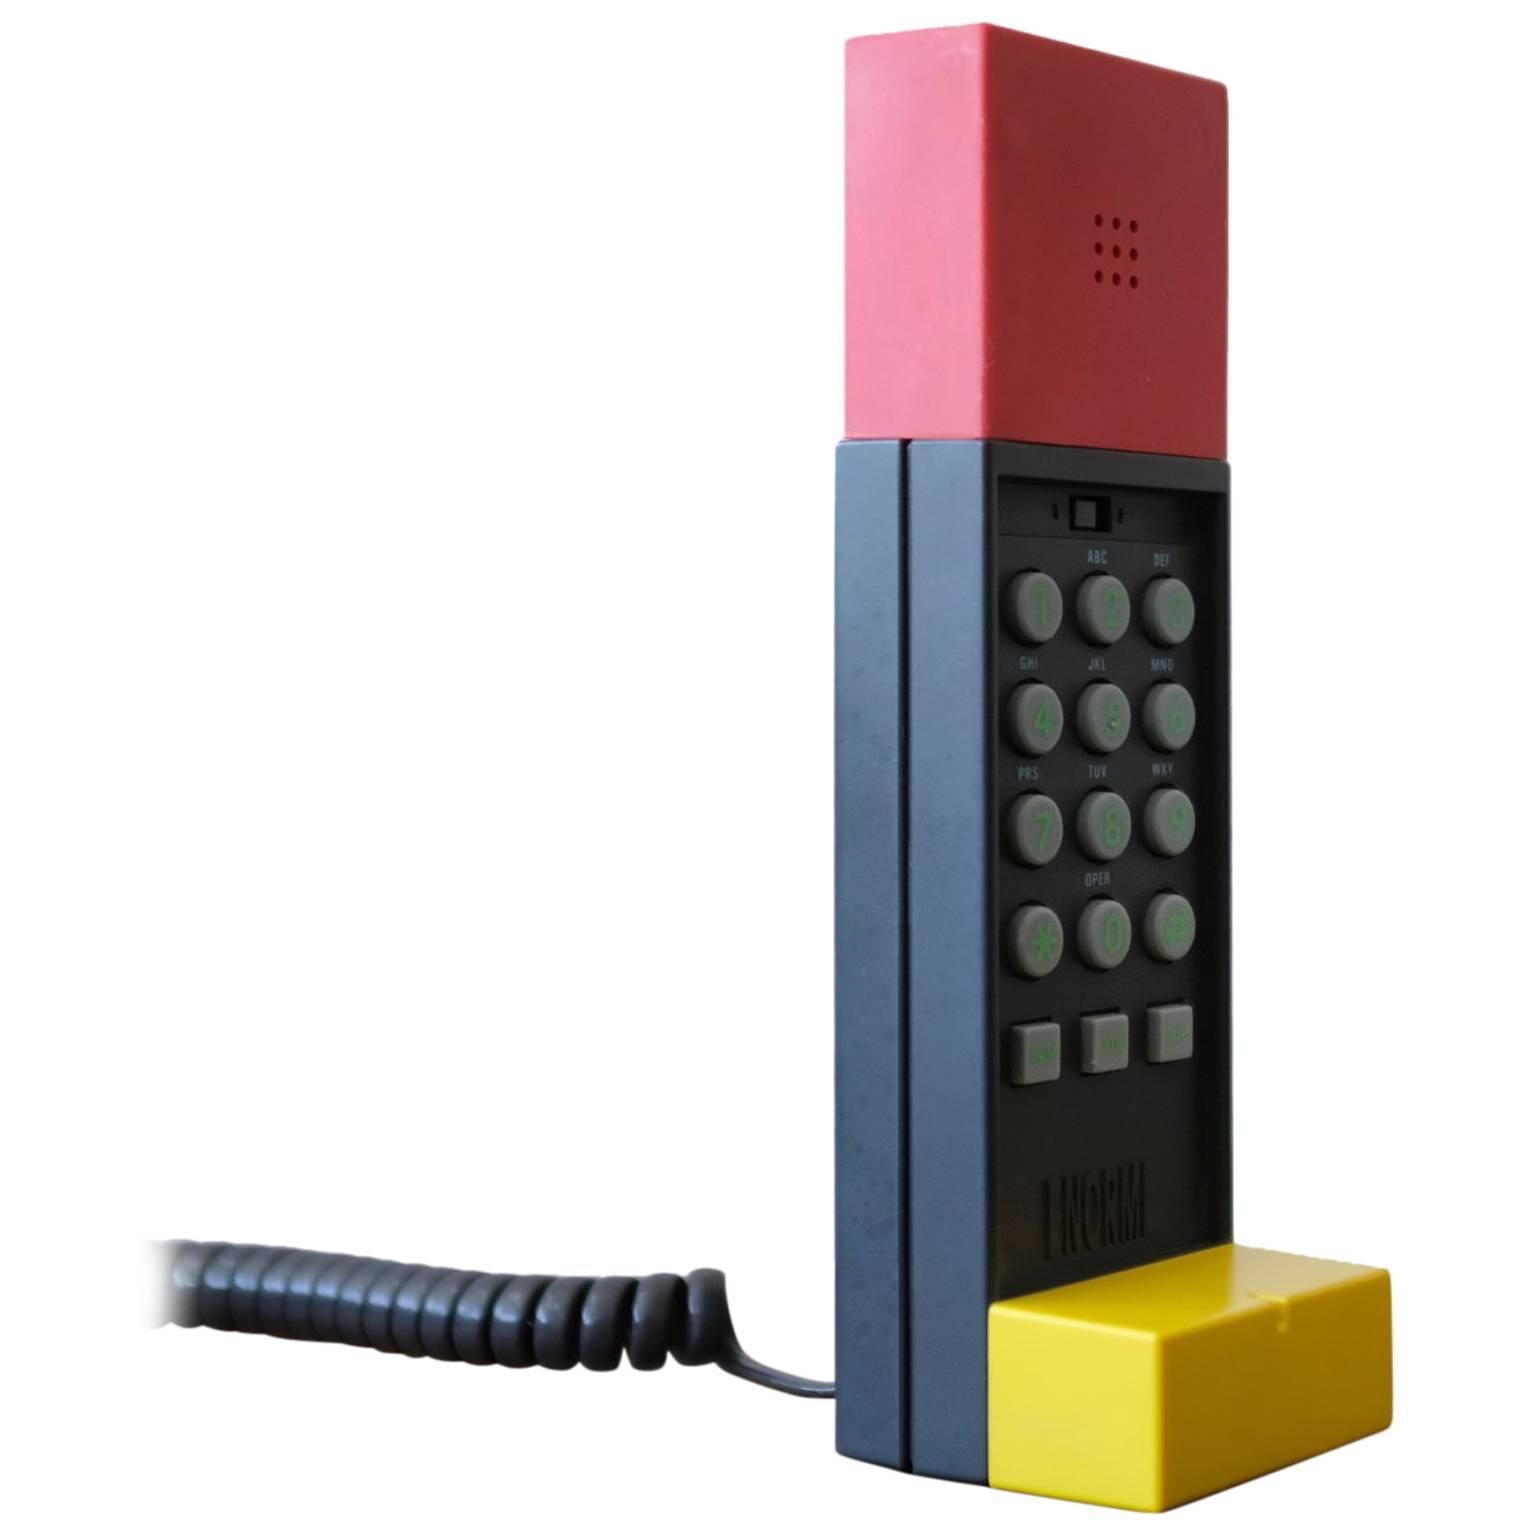 Ettore Sottsass Enorme Postmodern Telephone 1986 Memphis